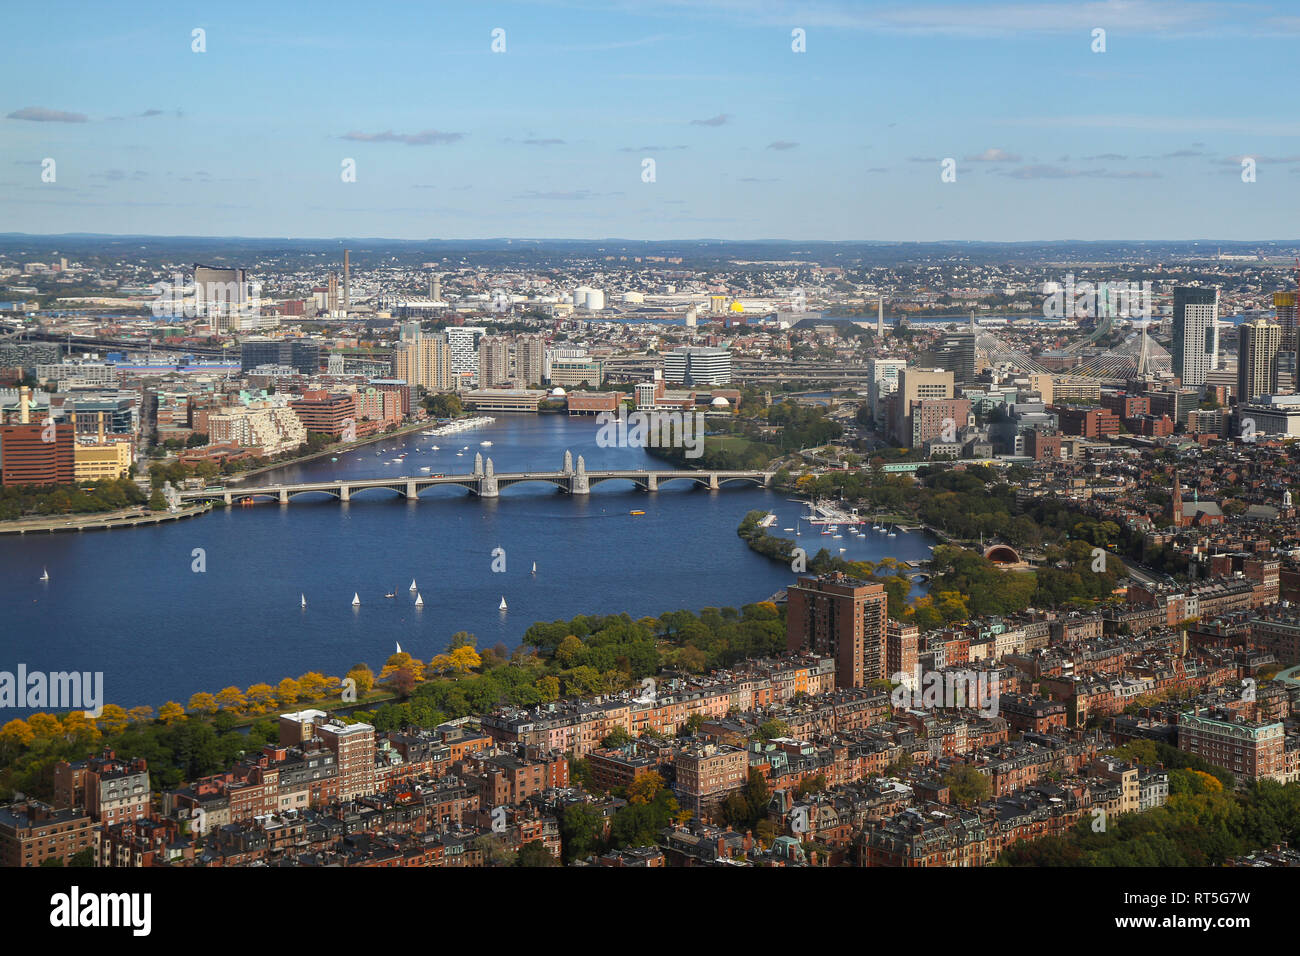 Ein Luftbild von Boston, die longfellow Bridge, den Charles River, Cambridge, und in anderen Bereichen jenseits, Massachusetts, Vereinigte Staaten von Amerika Stockfoto